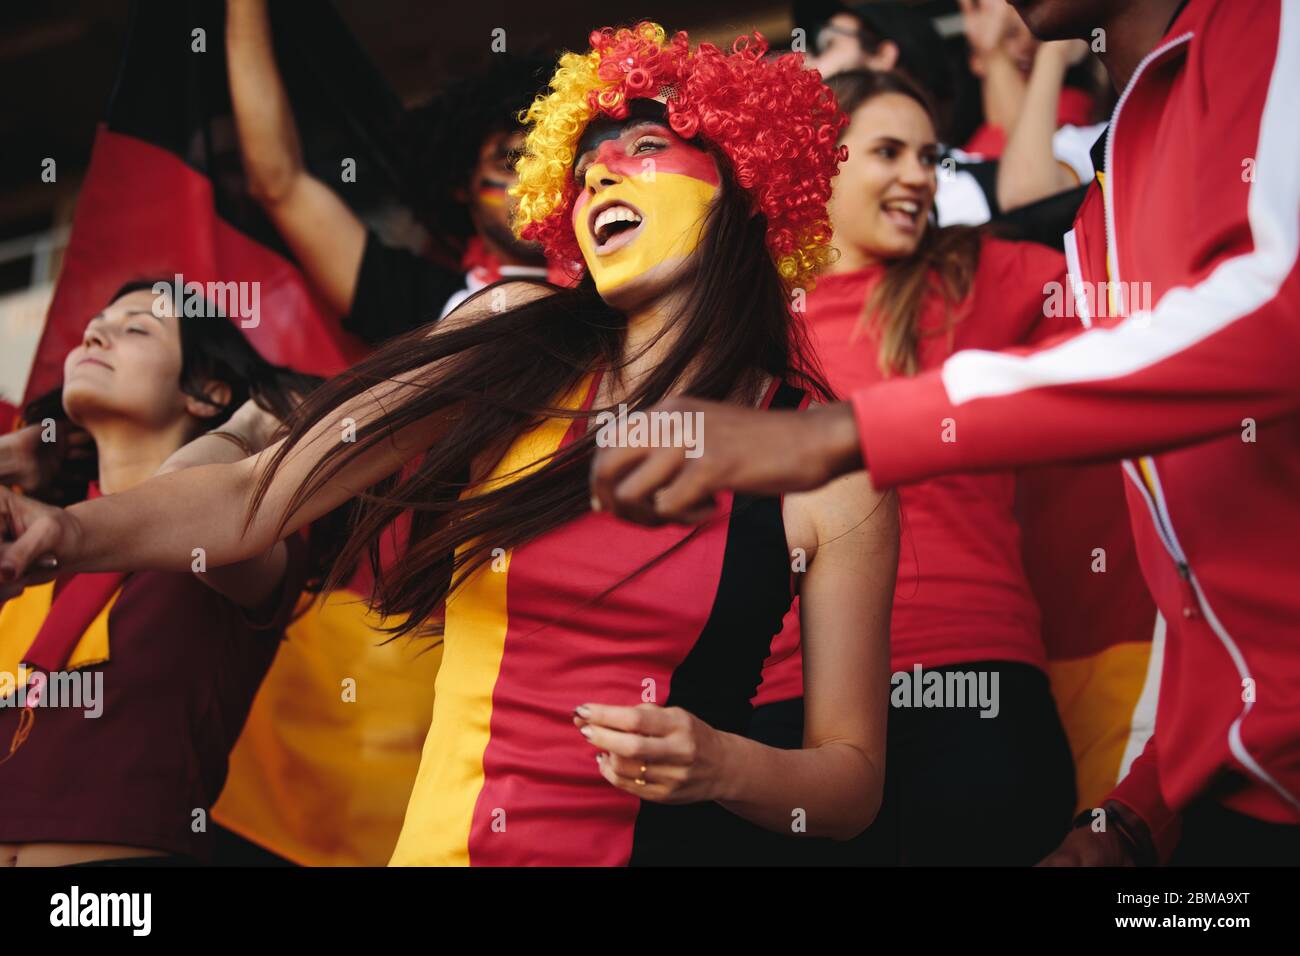 Frau im Stadion trägt eine Perücke und ihr Gesicht in deutschen Flaggen Farben gemalt jubeln für ihre Nationalmannschaft. Weiblich aus Deutschland genießt in Fanzone. Stockfoto